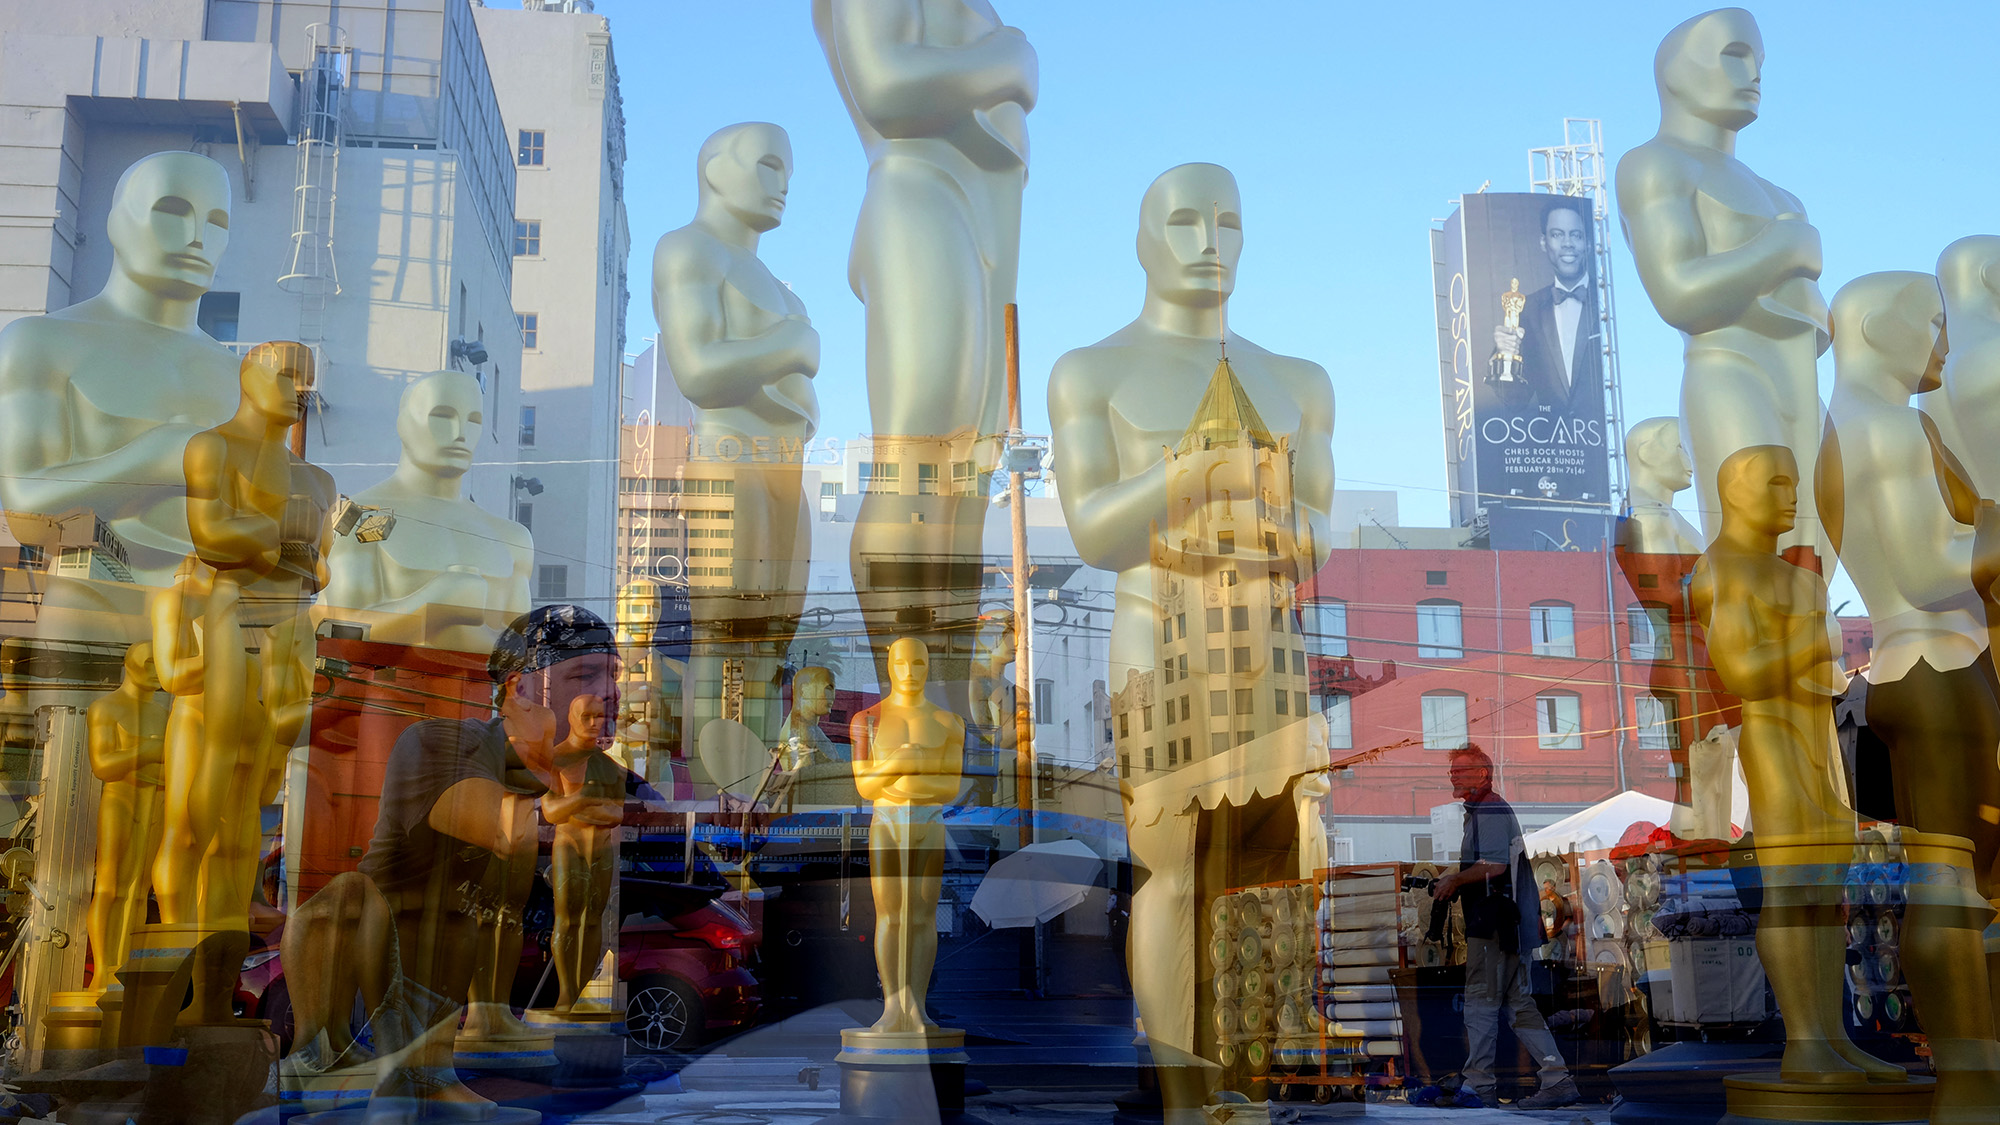 Will Smith tasliján túl: filmesek, akiket kitiltottak az Oscar-gáláról